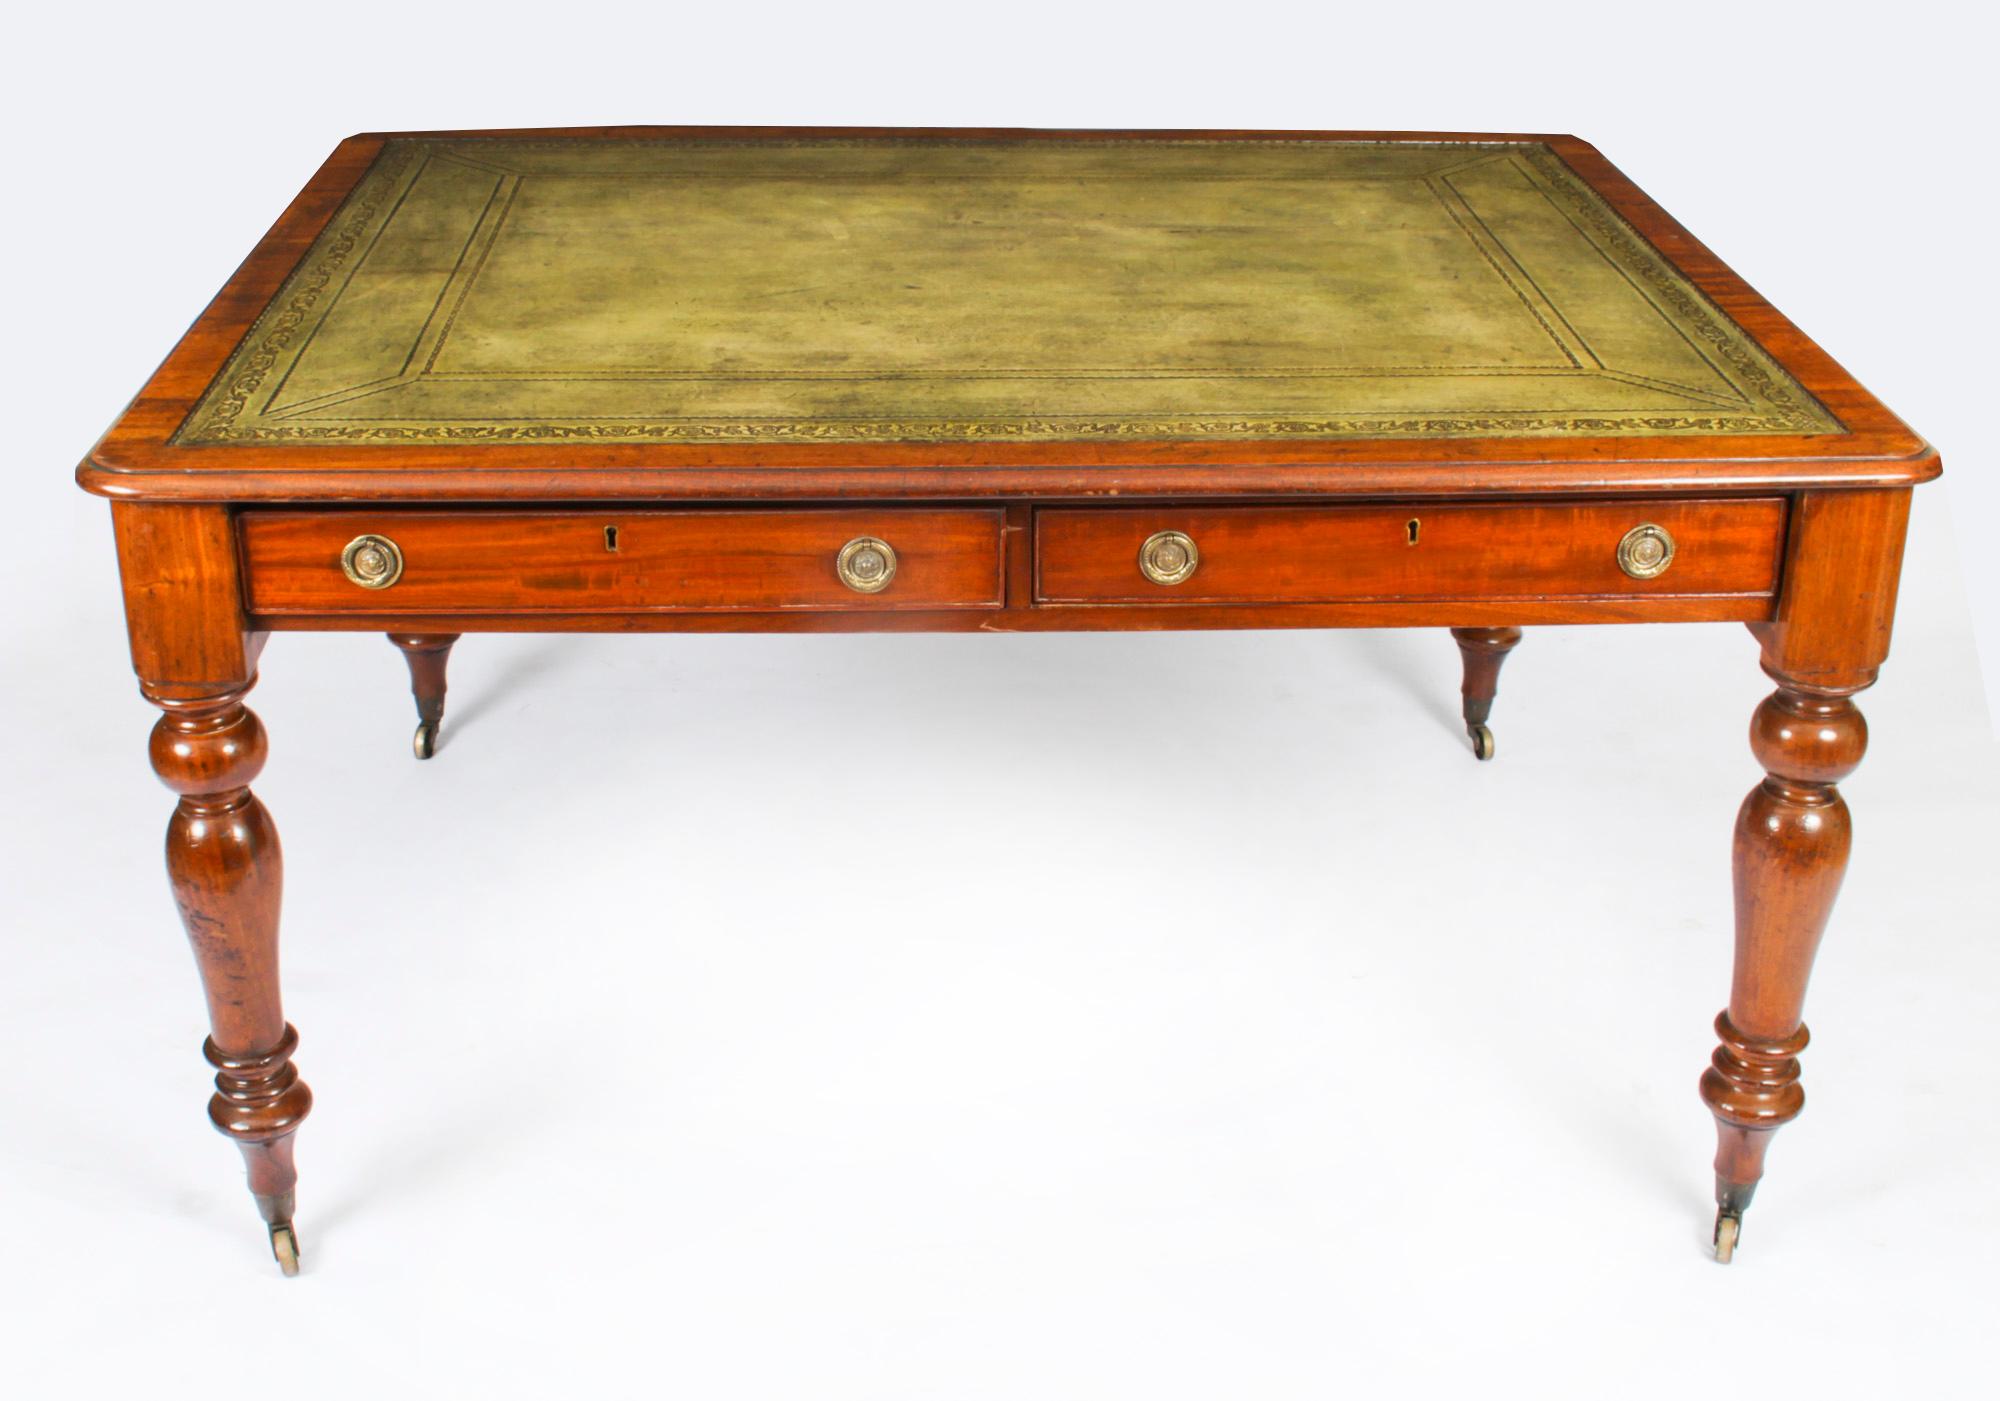 Dies ist eine hervorragende antike viktorianische Partner Schreibtisch, aus schönen Flamme Mahagoni gefertigt und aus ca. 1860.
 
Die rechteckige Platte hat eine profilierte Kante mit einem Einsatz aus verblasstem grünem und vergoldetem Leder und